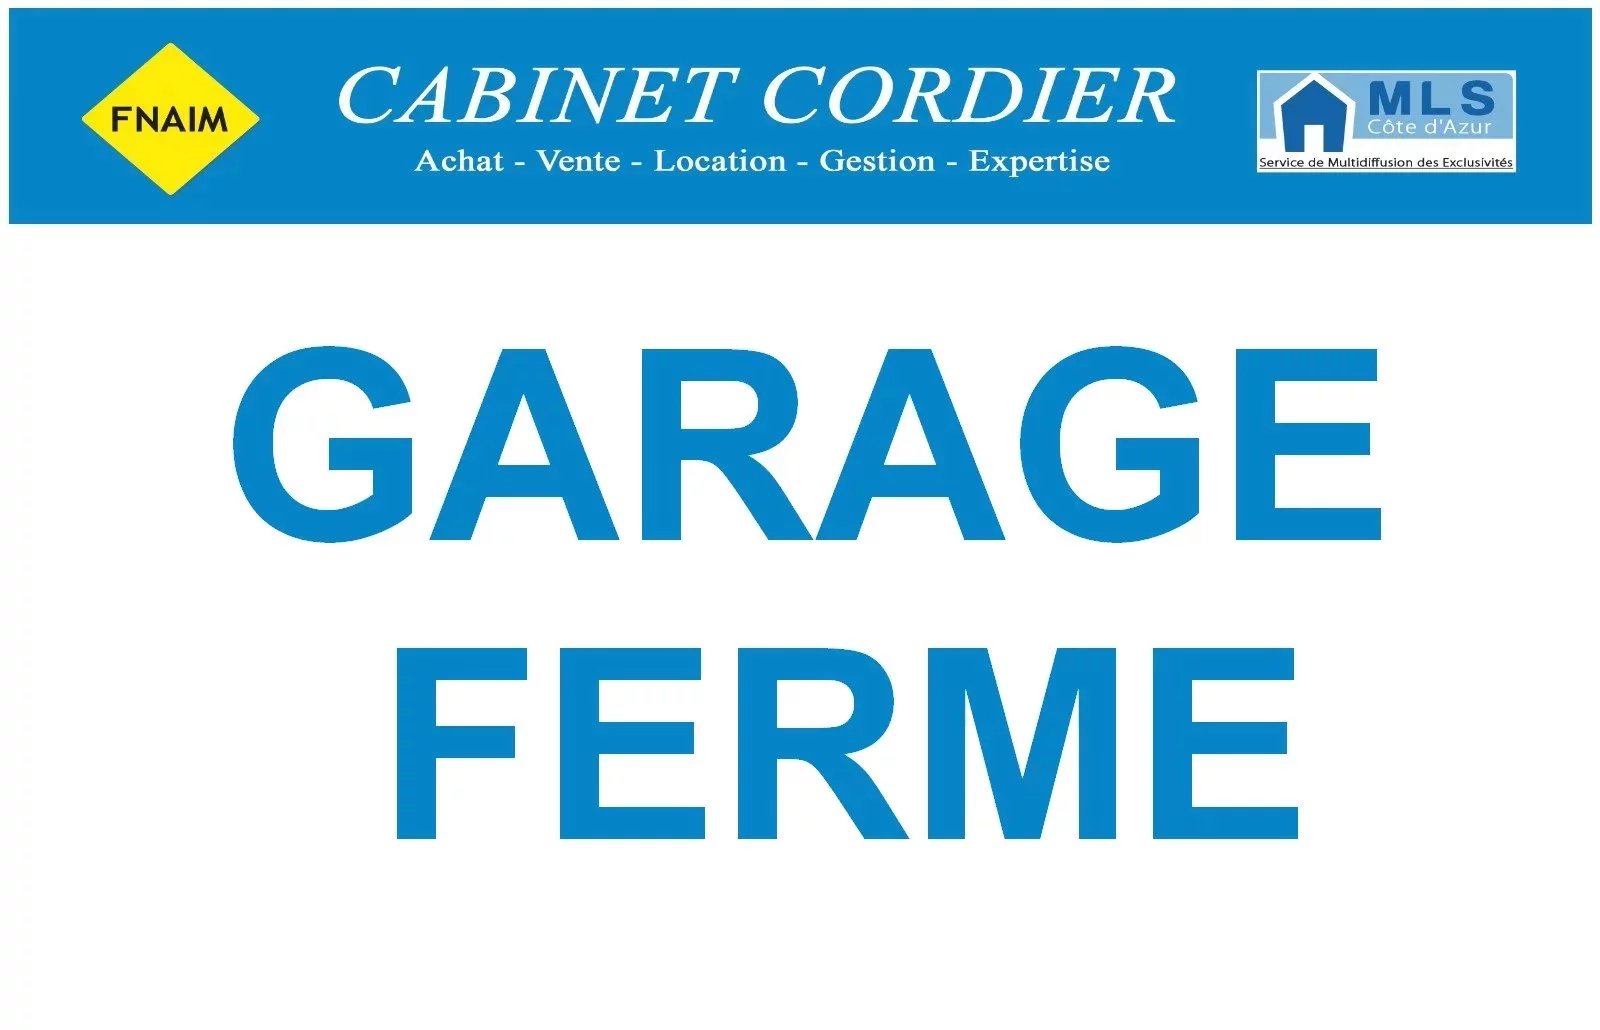 Vente Parking / Box à Nice (06300) - Cabinet Cordier